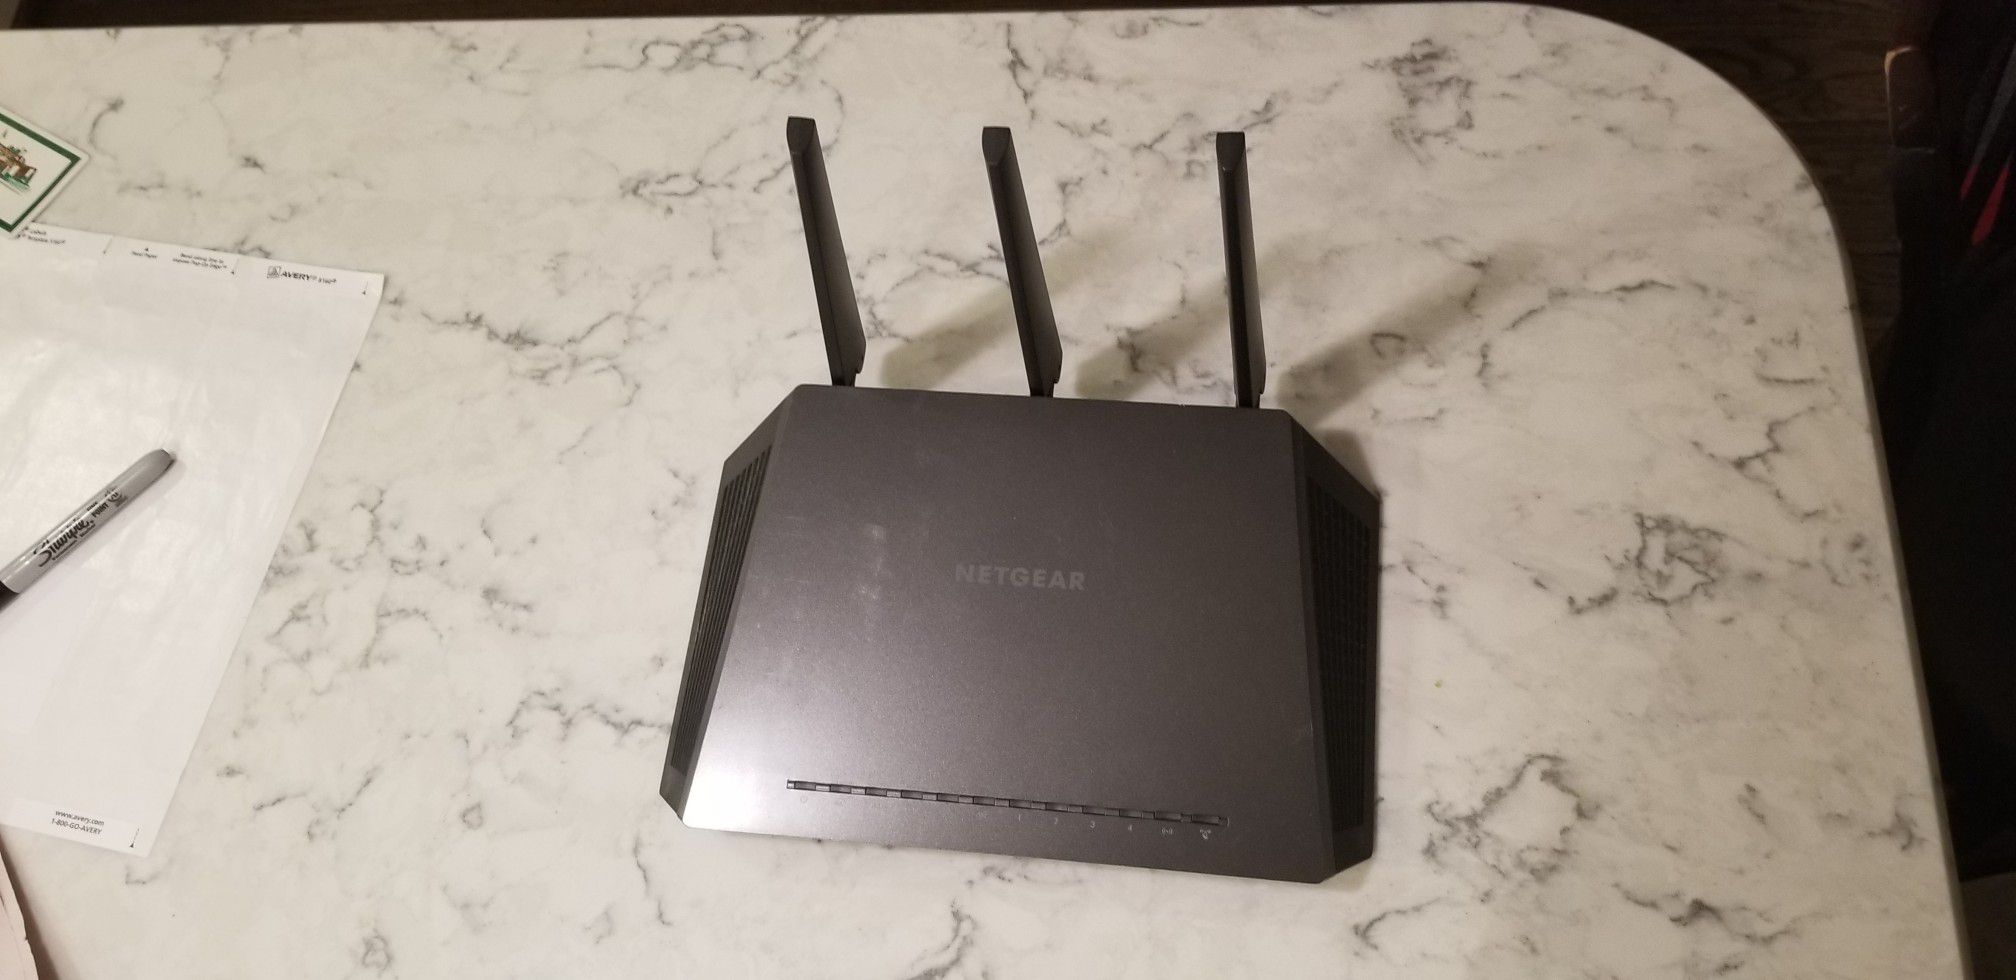 Netgear Nighthawk wifi router